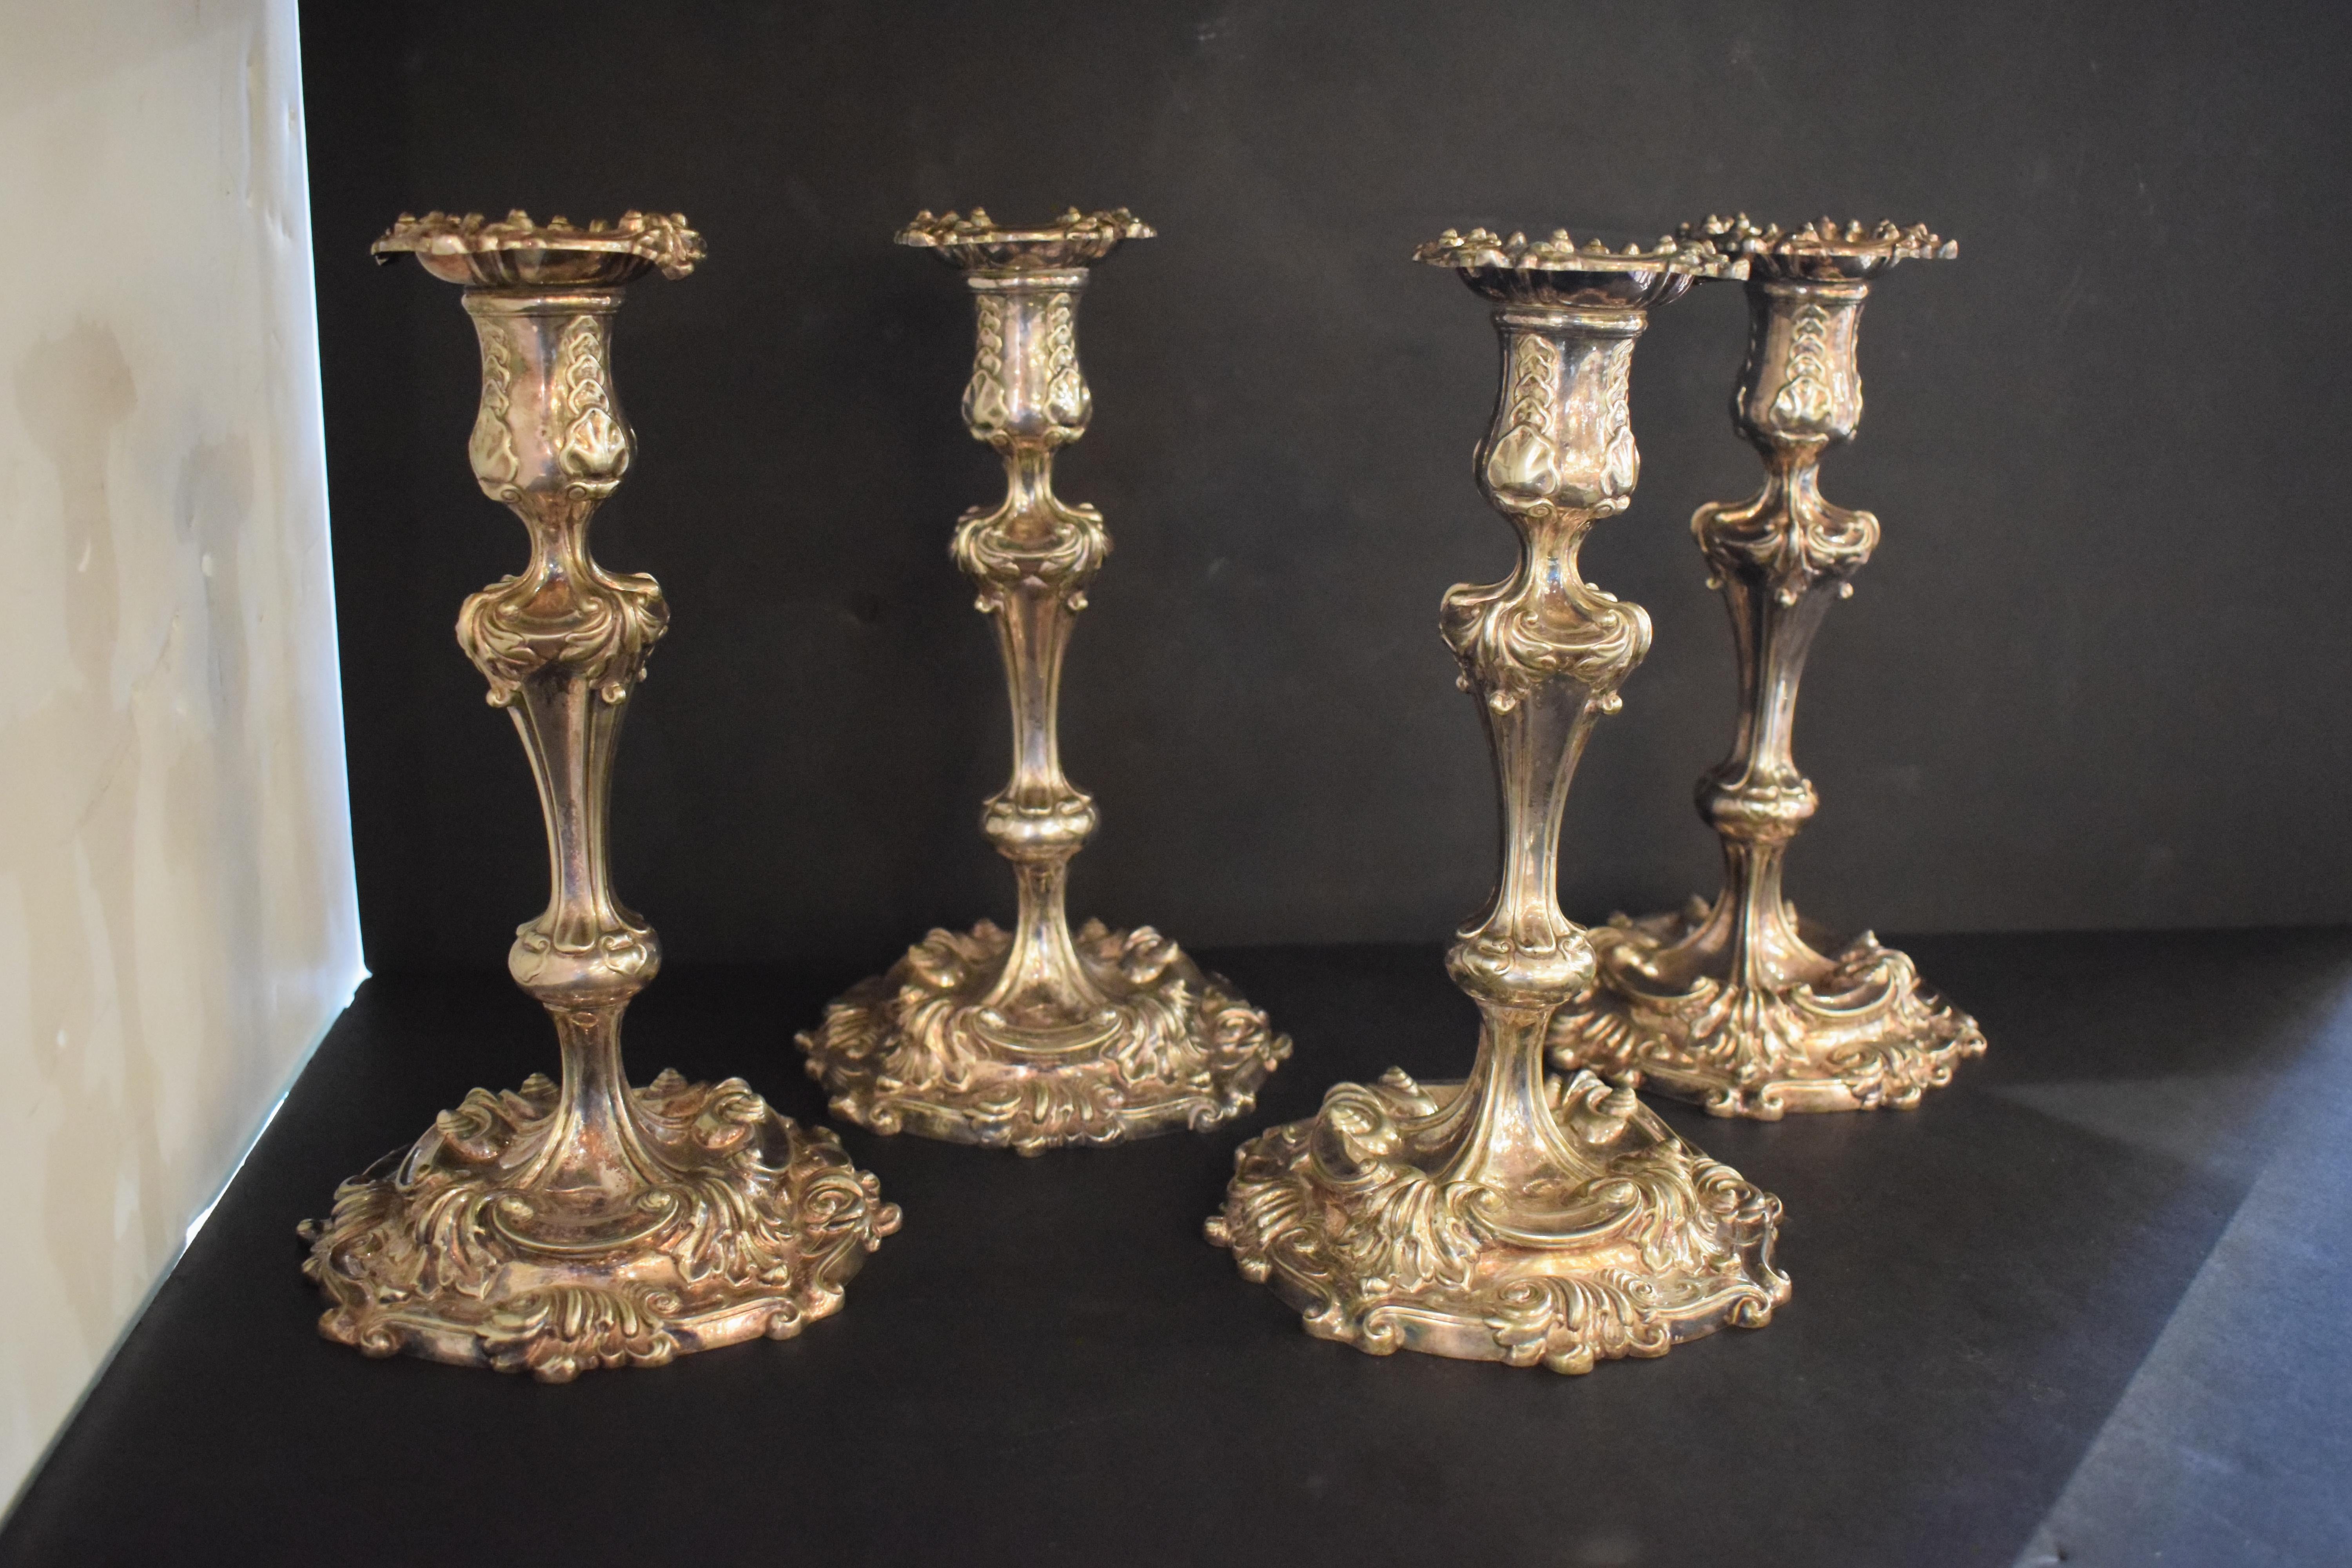 Ein feiner Satz von 4 Kerzenleuchtern im Rokoko-Stil von Tiffany & Co. 3 von ihnen sind im Boden gestempelt 